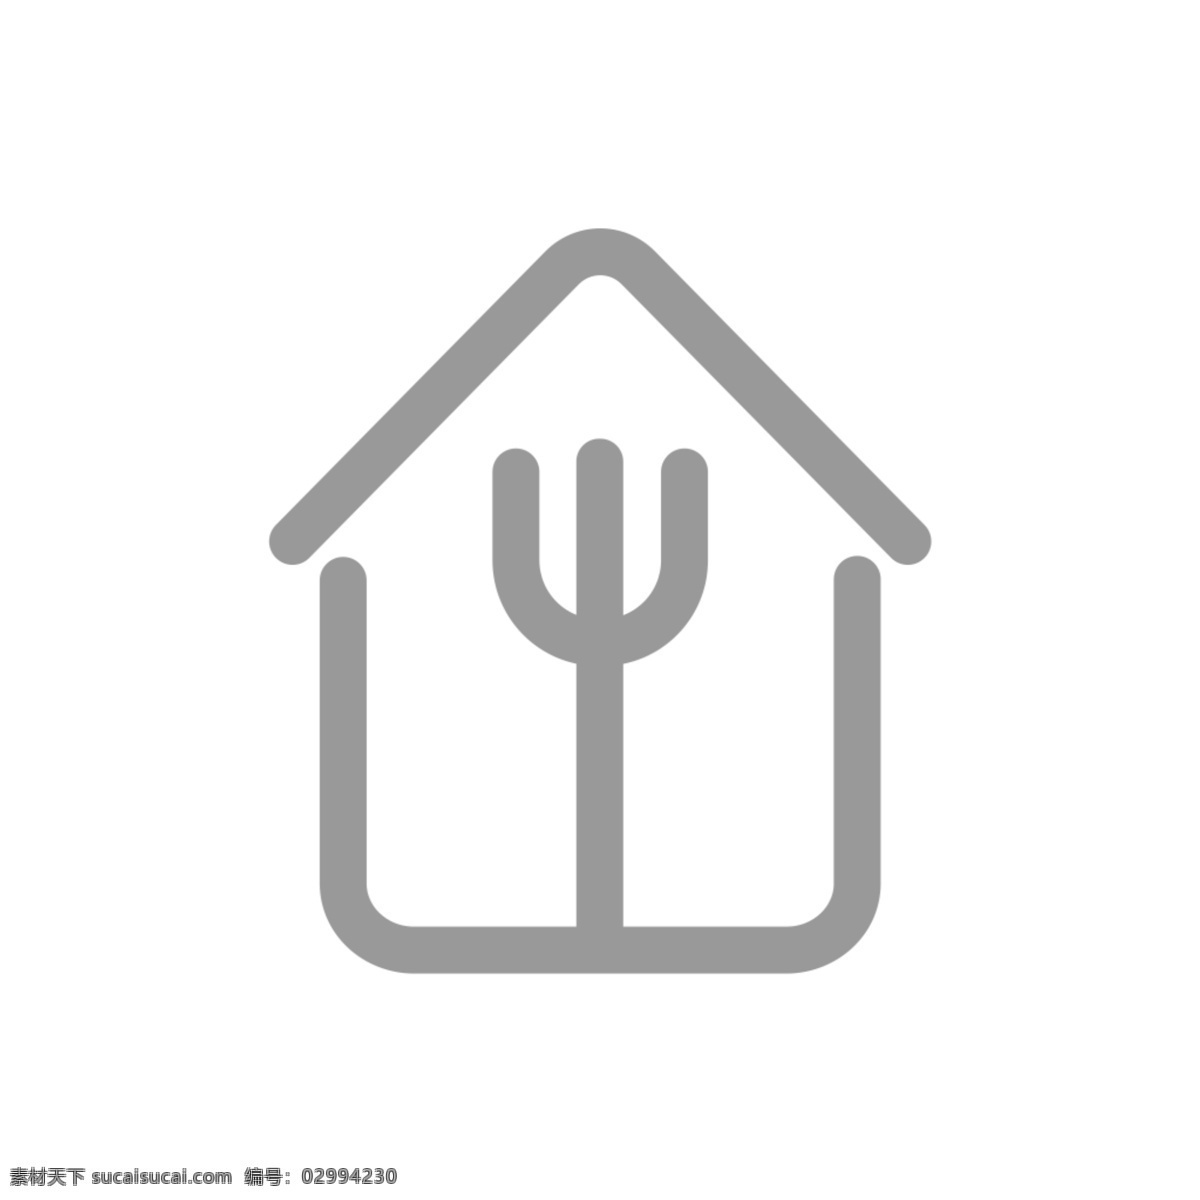 原创 绿色 健康 美食 tabbar 图标 简洁 icon 面性